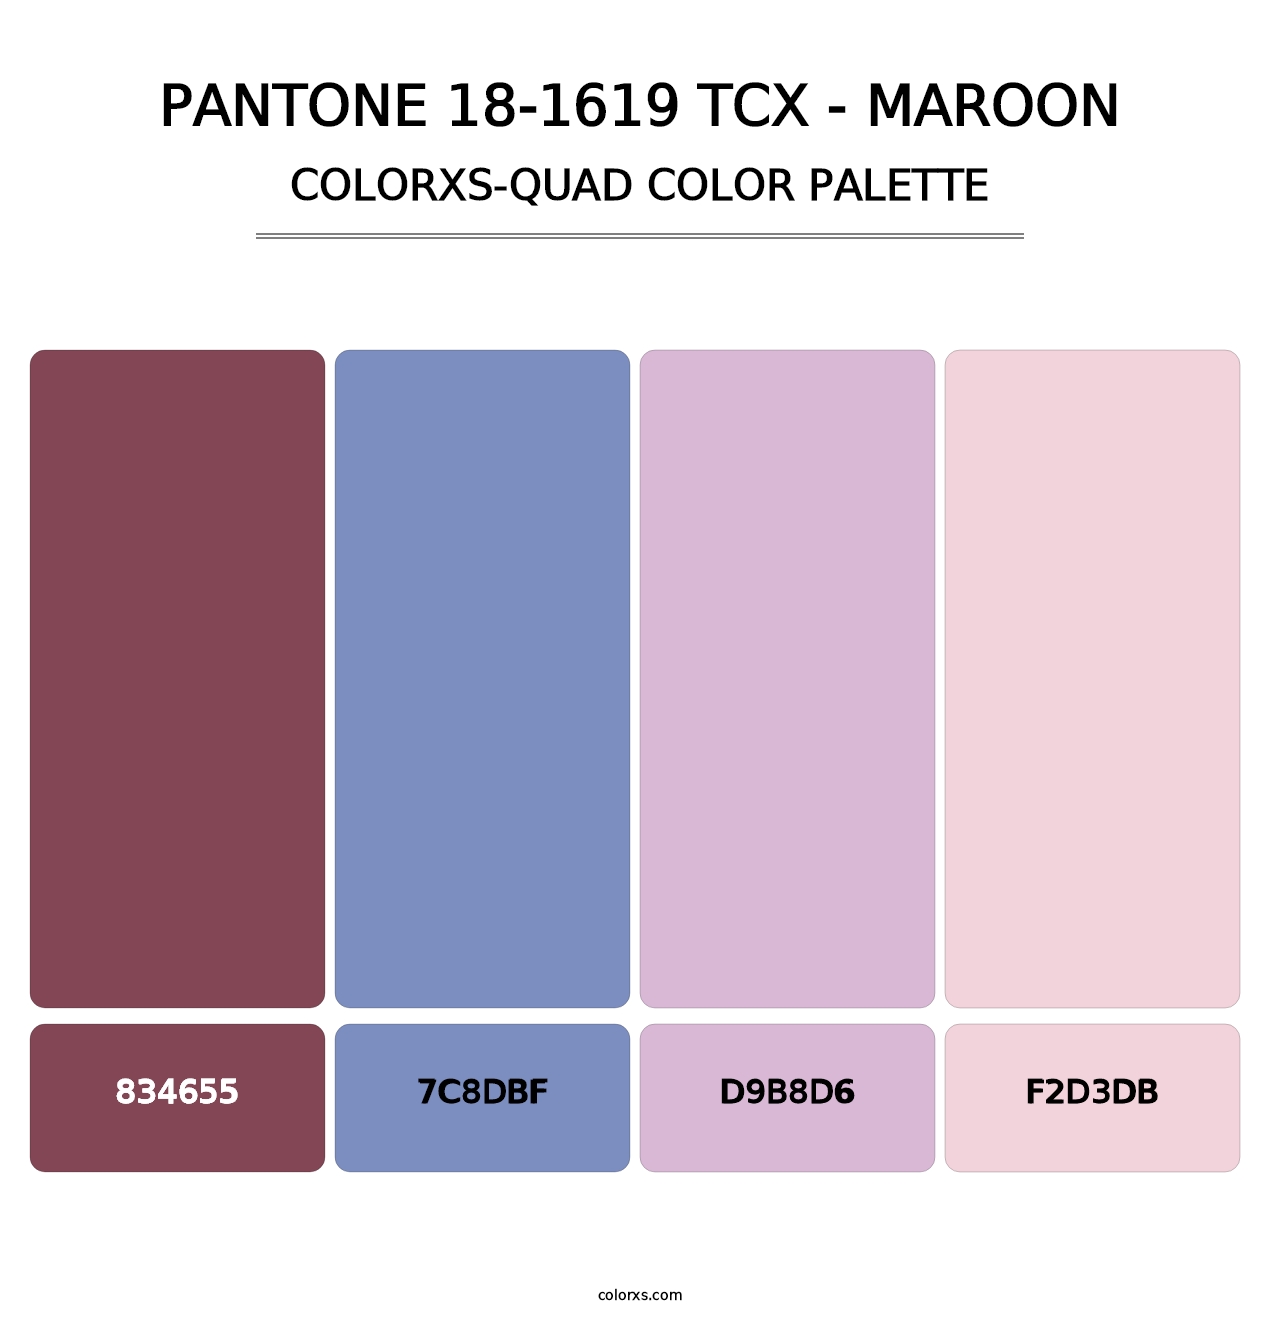 PANTONE 18-1619 TCX - Maroon - Colorxs Quad Palette